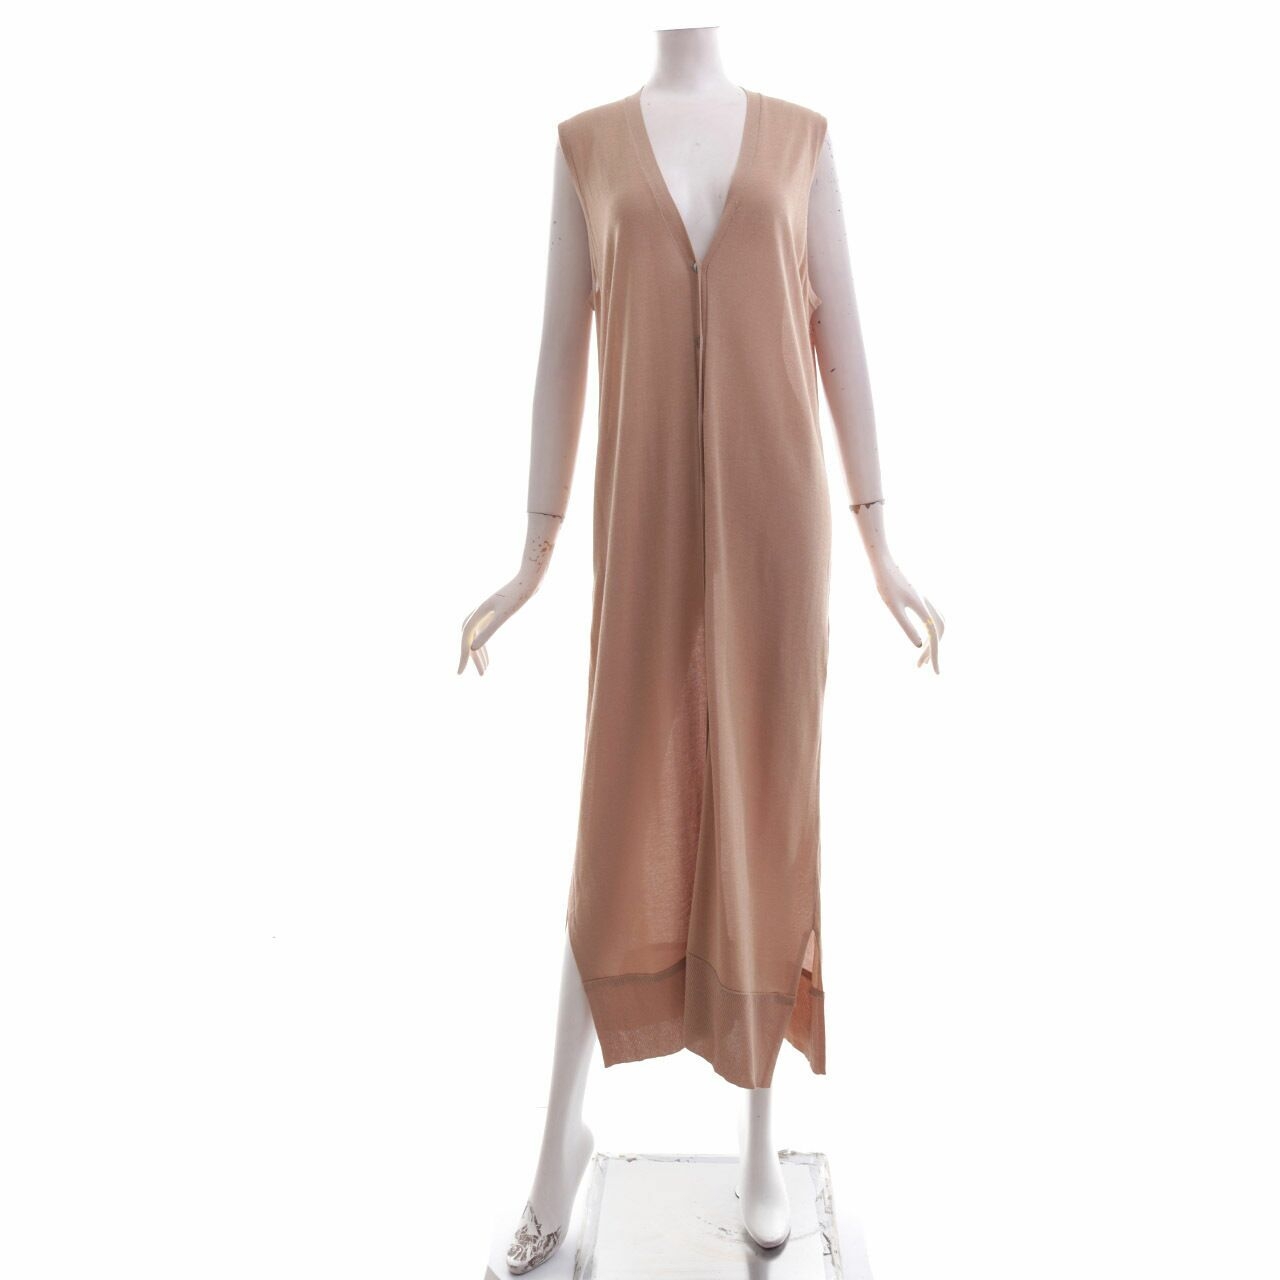 Zara Light Brown Long Dress